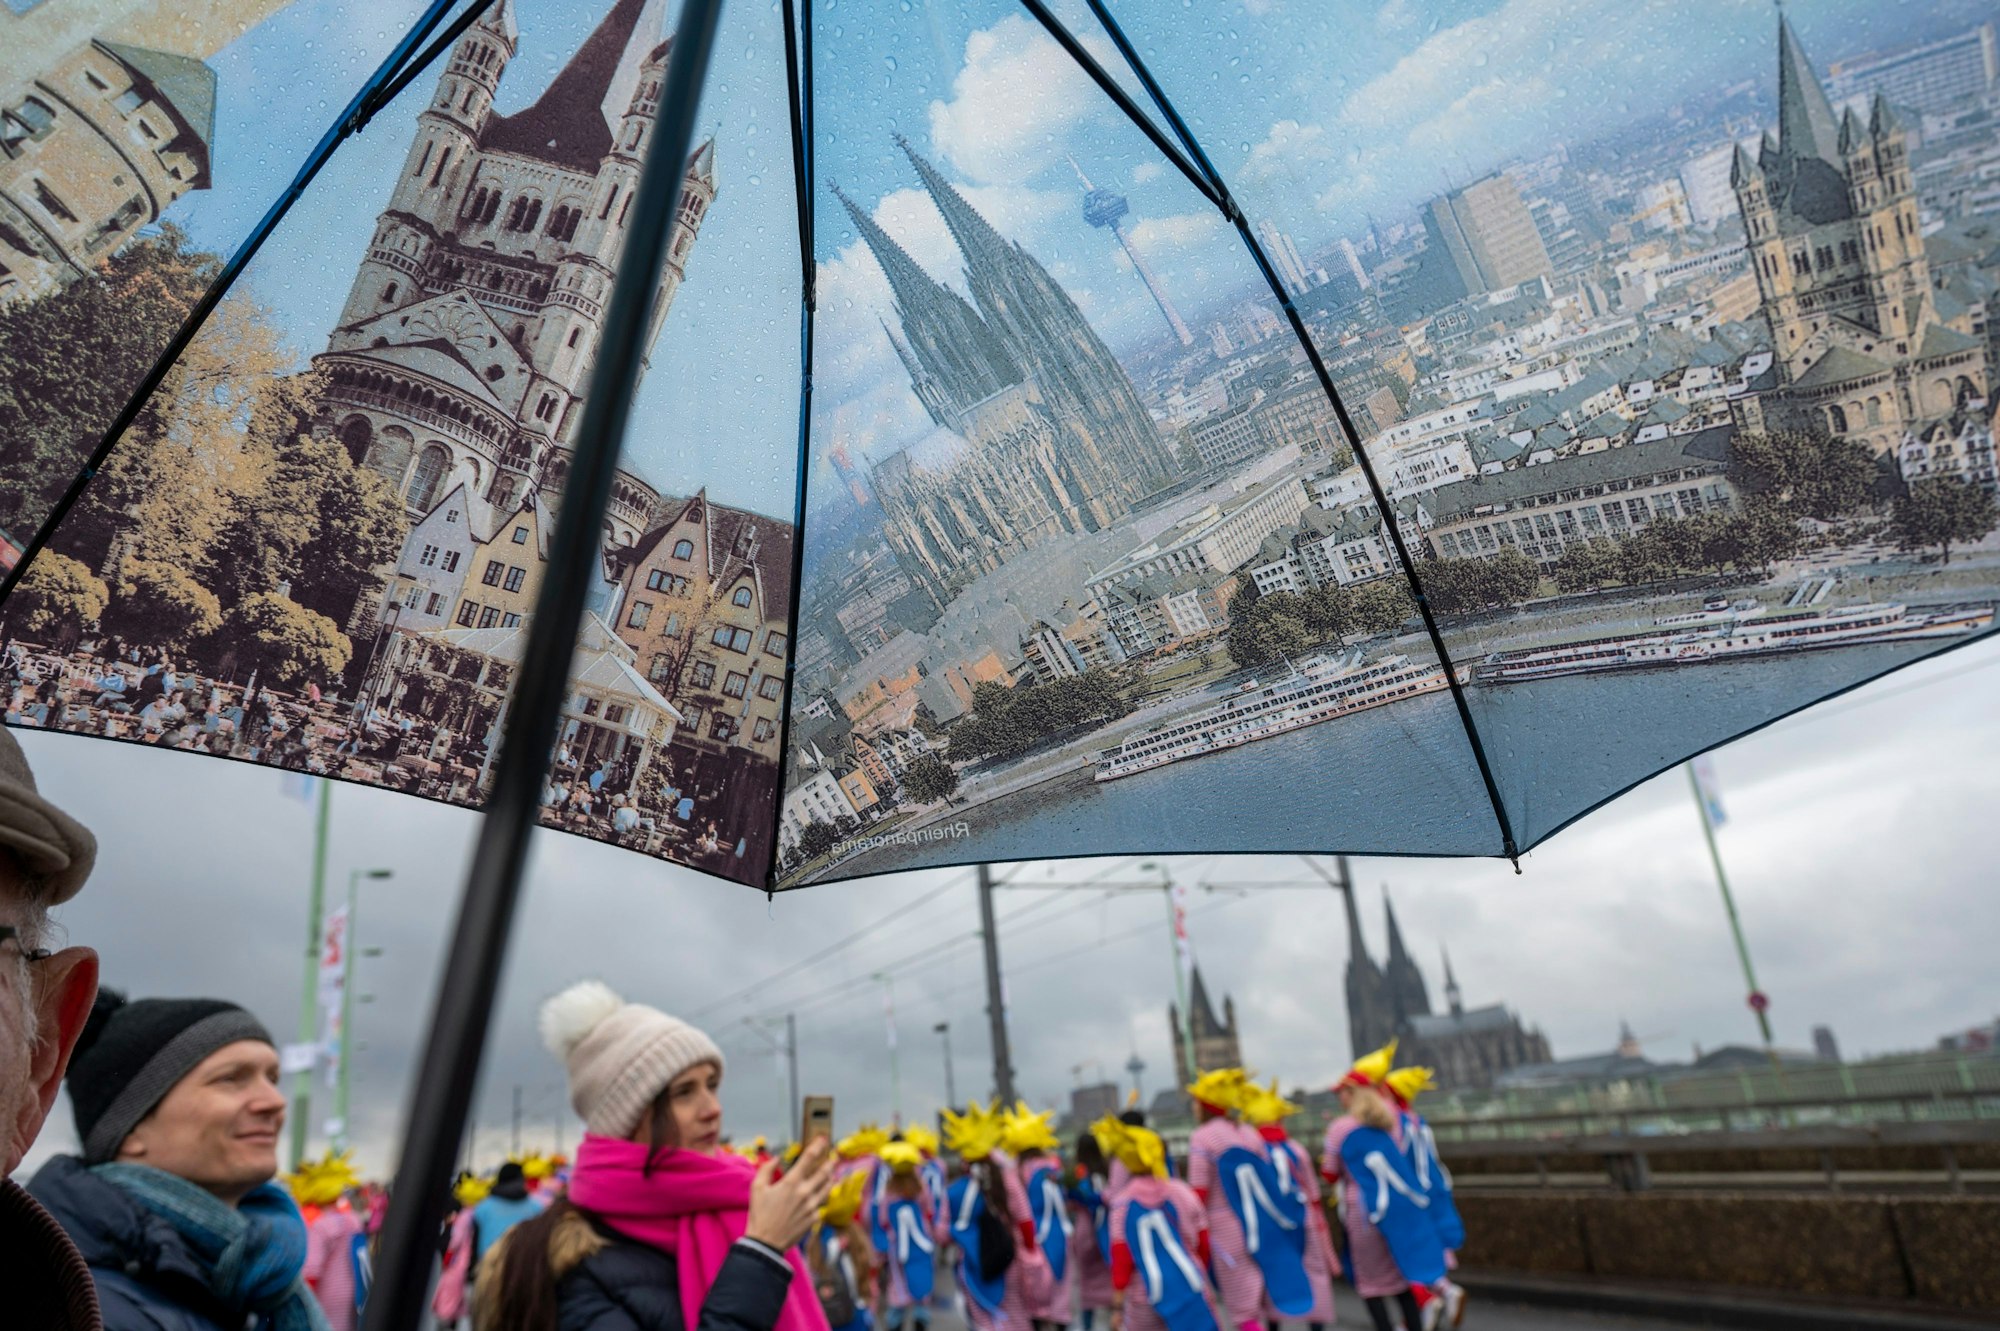 Karnevalisten stehen auf der Deutzer Brücke unter einem Regenschirm, der verschiedenen Stadtansichten Kölns zeigt.